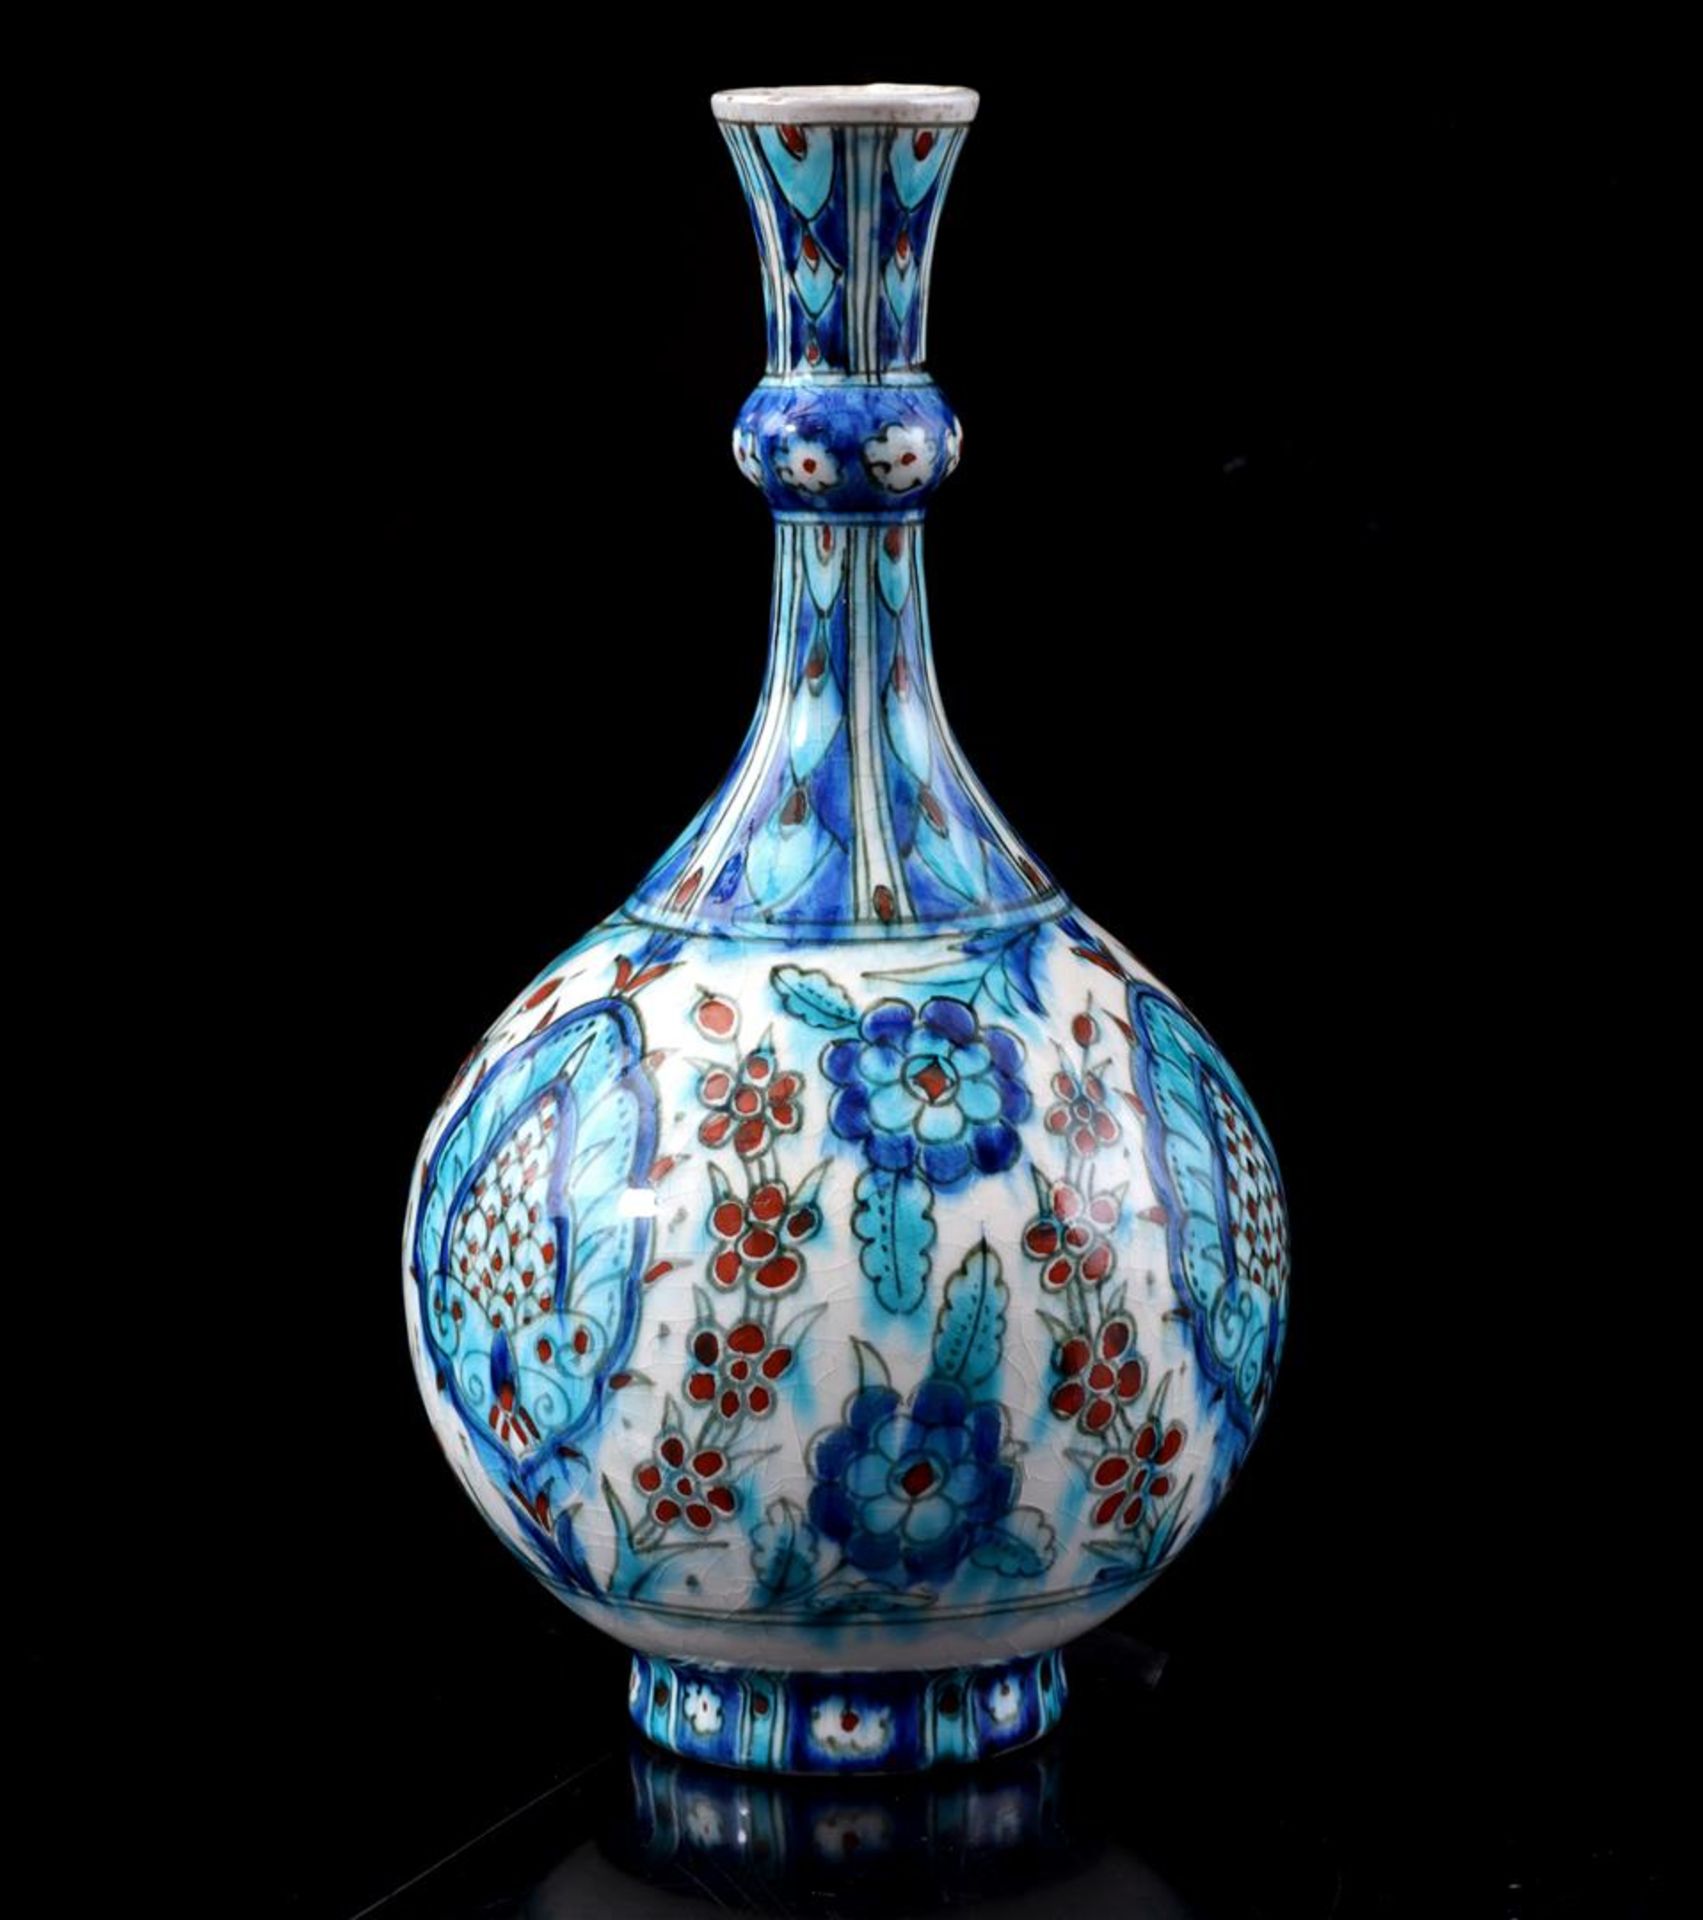 Porceleyne Fles Delft earthenware knob vase